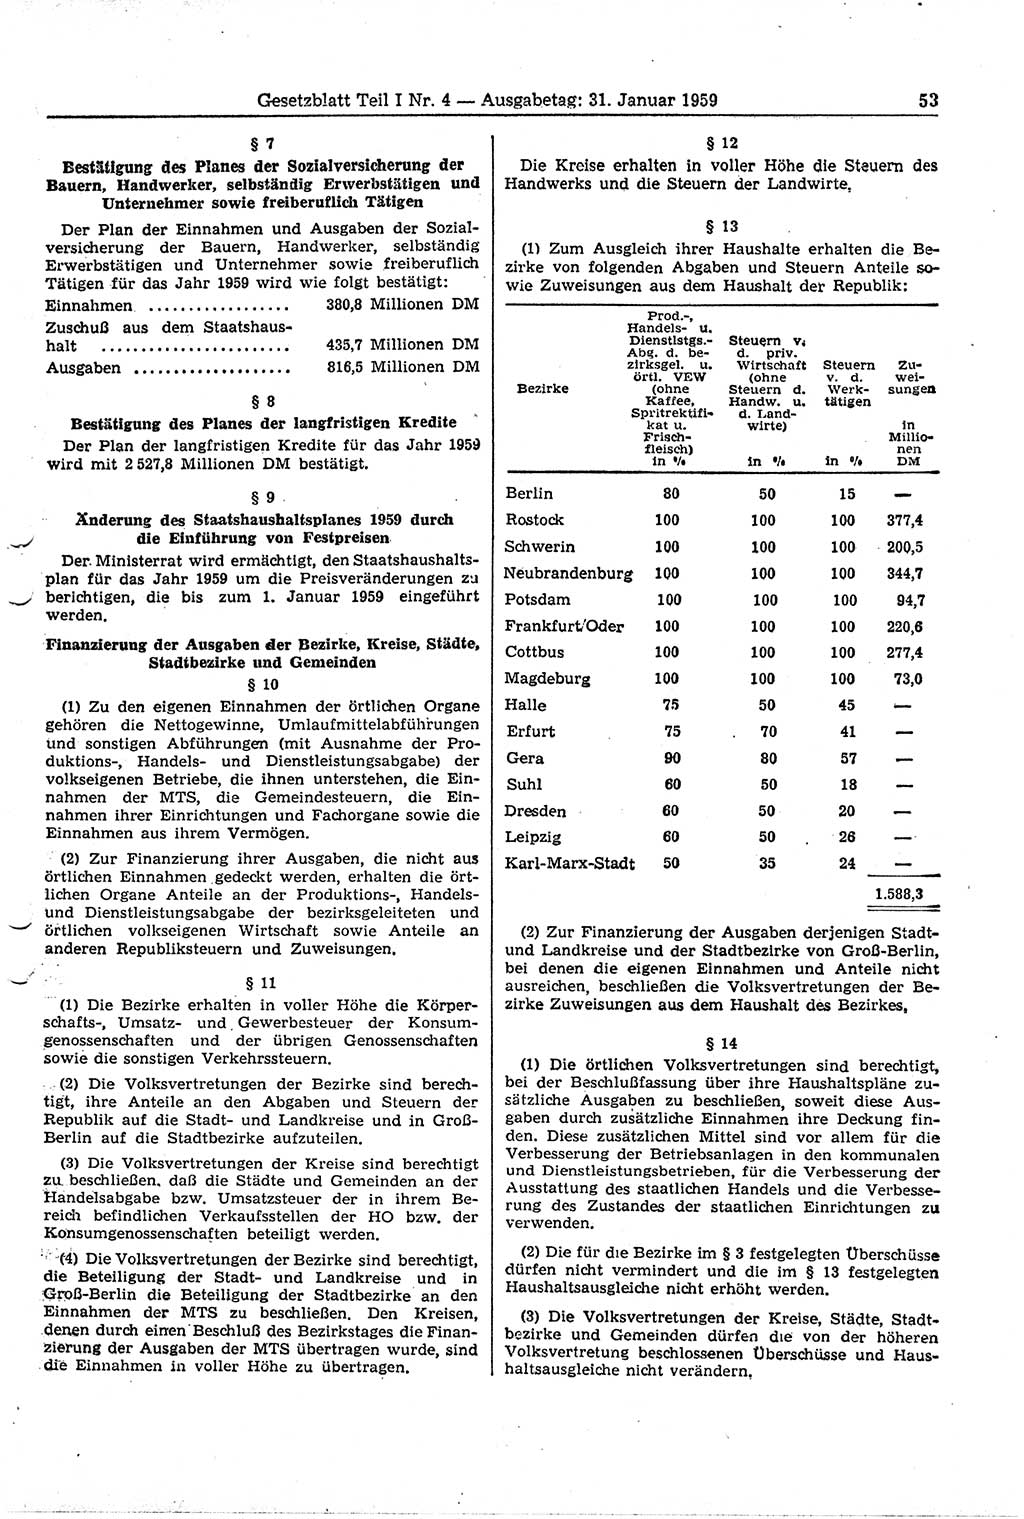 Gesetzblatt (GBl.) der Deutschen Demokratischen Republik (DDR) Teil Ⅰ 1959, Seite 53 (GBl. DDR Ⅰ 1959, S. 53)